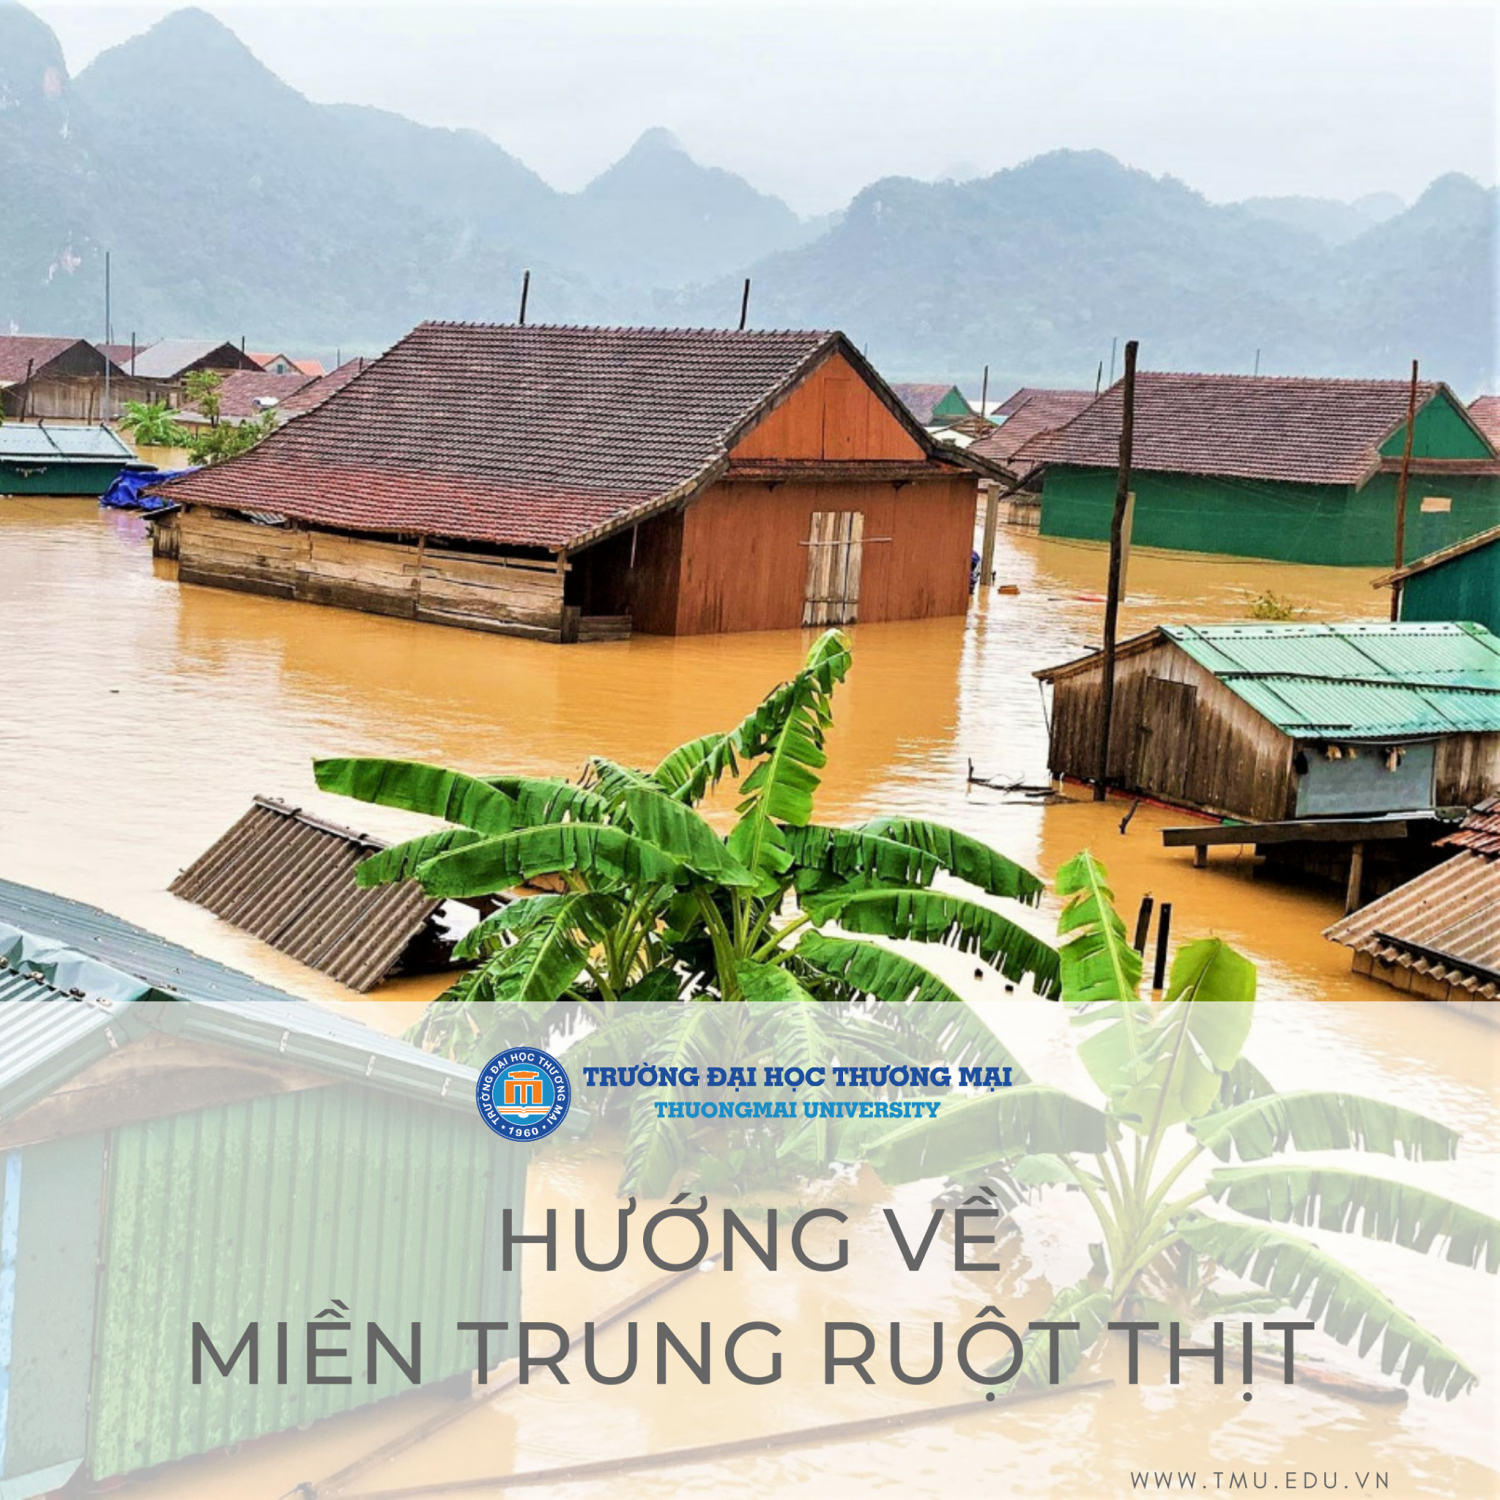 Trường Đại học Thương mại hỗ trợ sinh viên chịu ảnh hưởng lũ lụt miền Trung. Ảnh: ĐHTM.